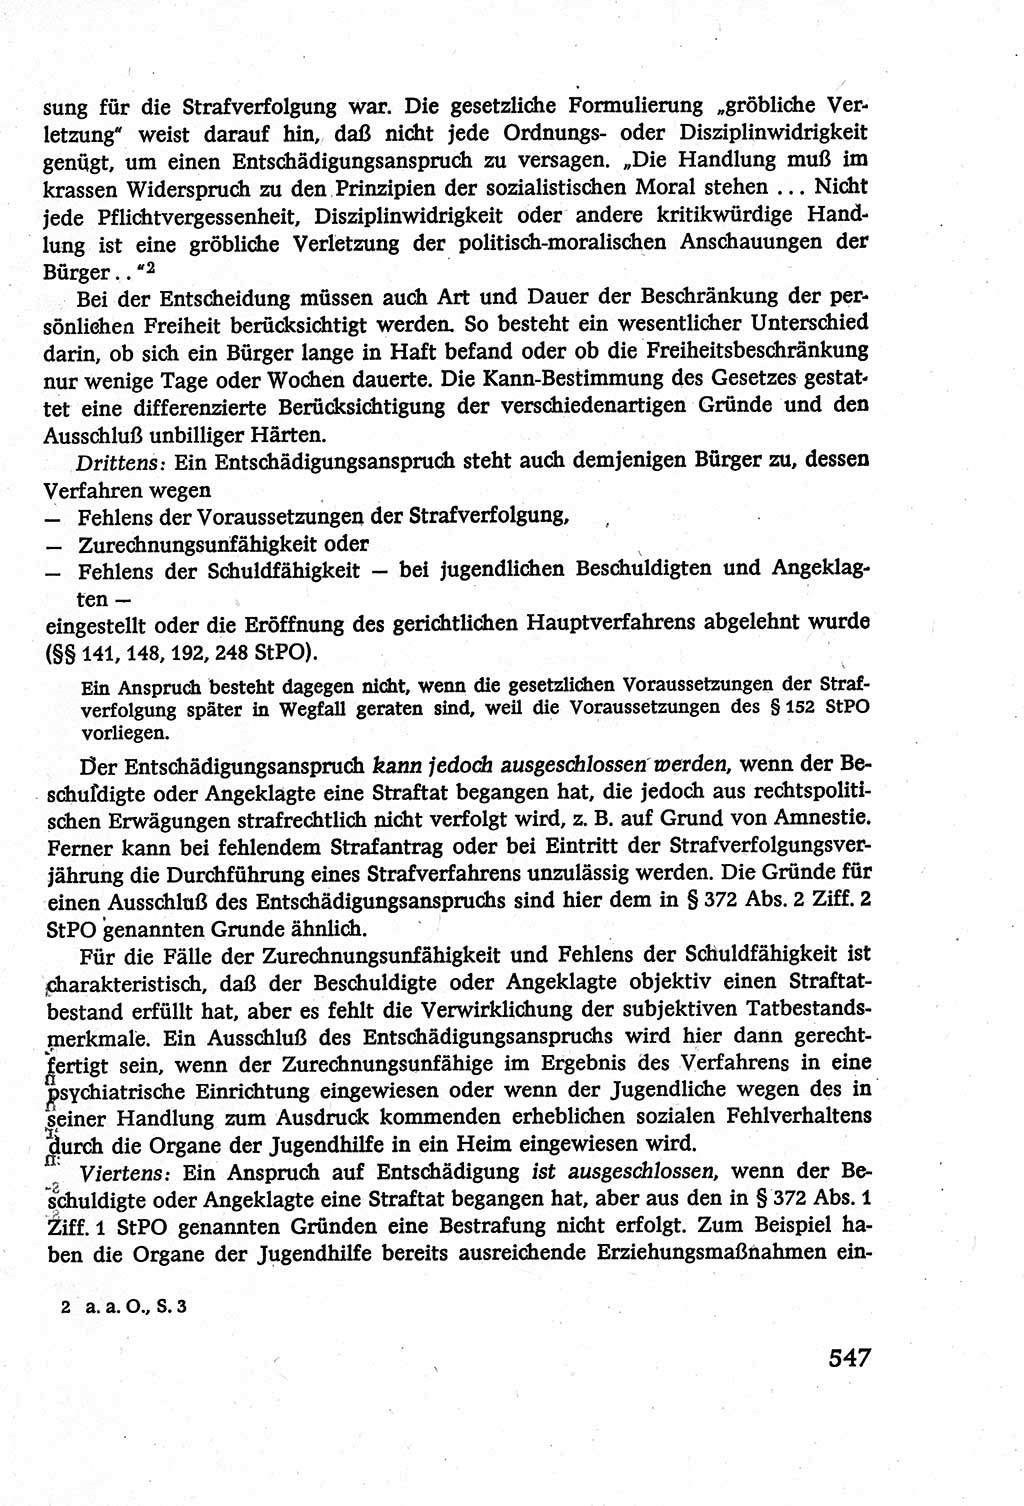 Strafverfahrensrecht [Deutsche Demokratische Republik (DDR)], Lehrbuch 1977, Seite 547 (Strafverf.-R. DDR Lb. 1977, S. 547)